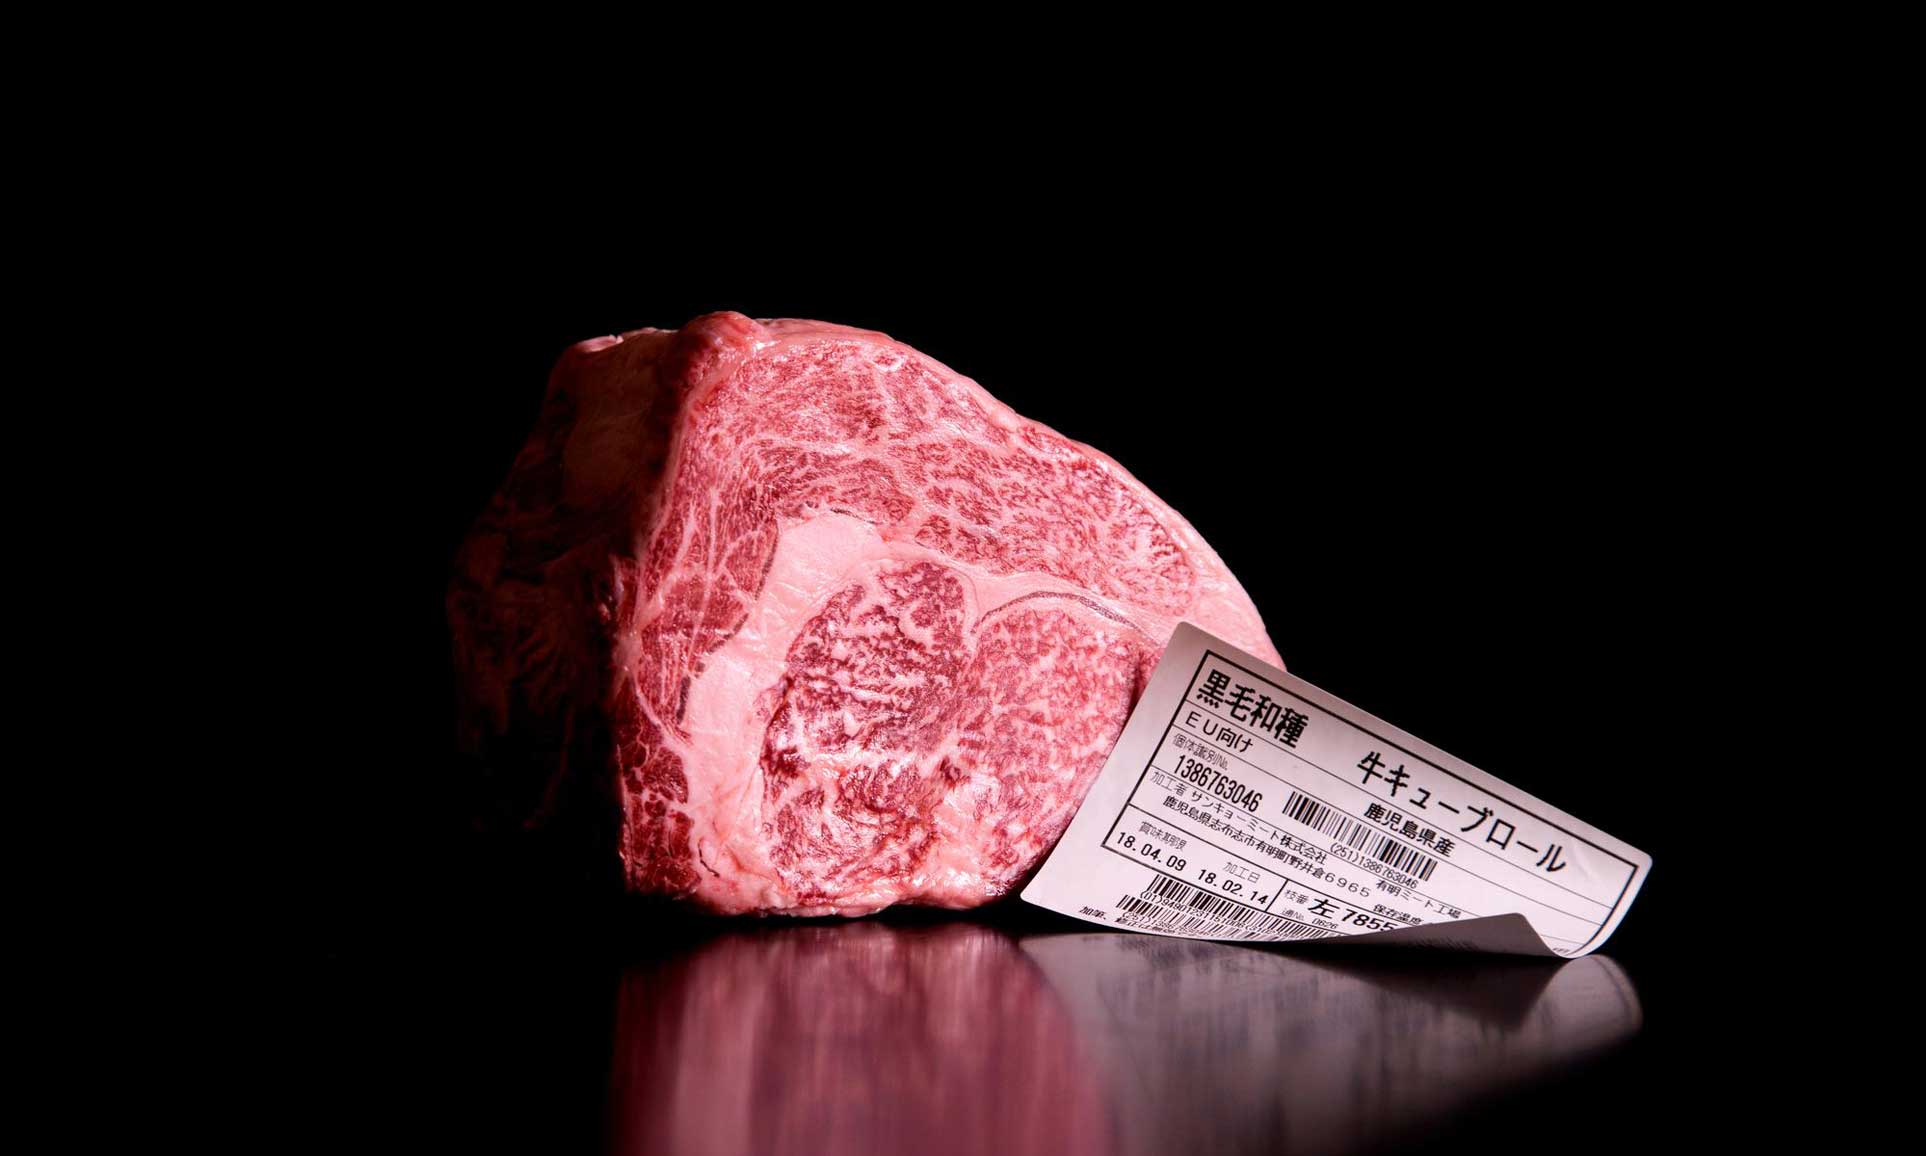 قیمت گوشت برزیلی